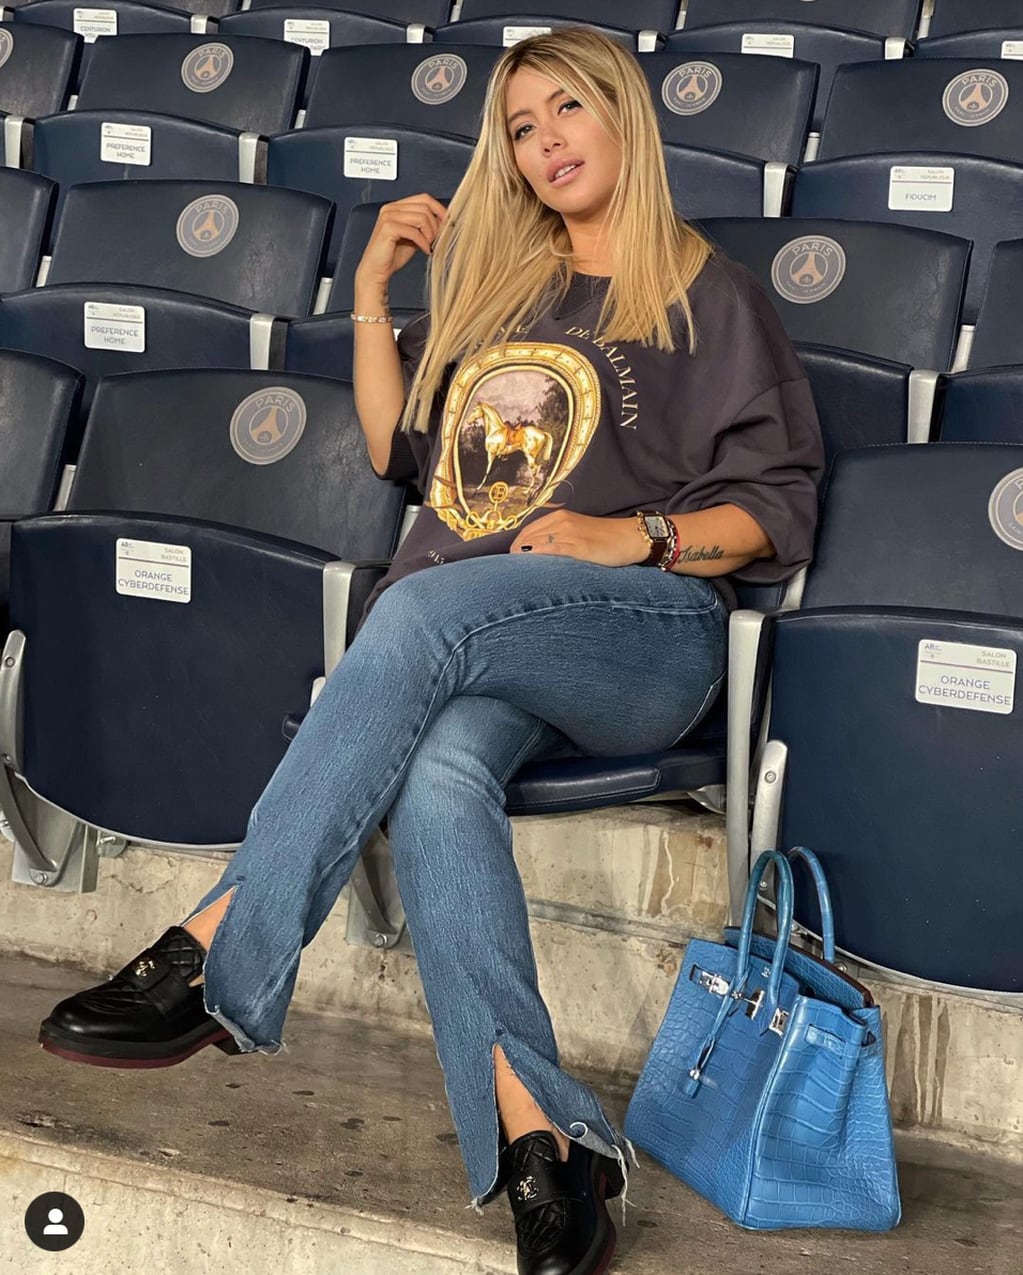 Wanda alentando al PSG con su cartera Brikin de Hermés y sus mocasines Chanel